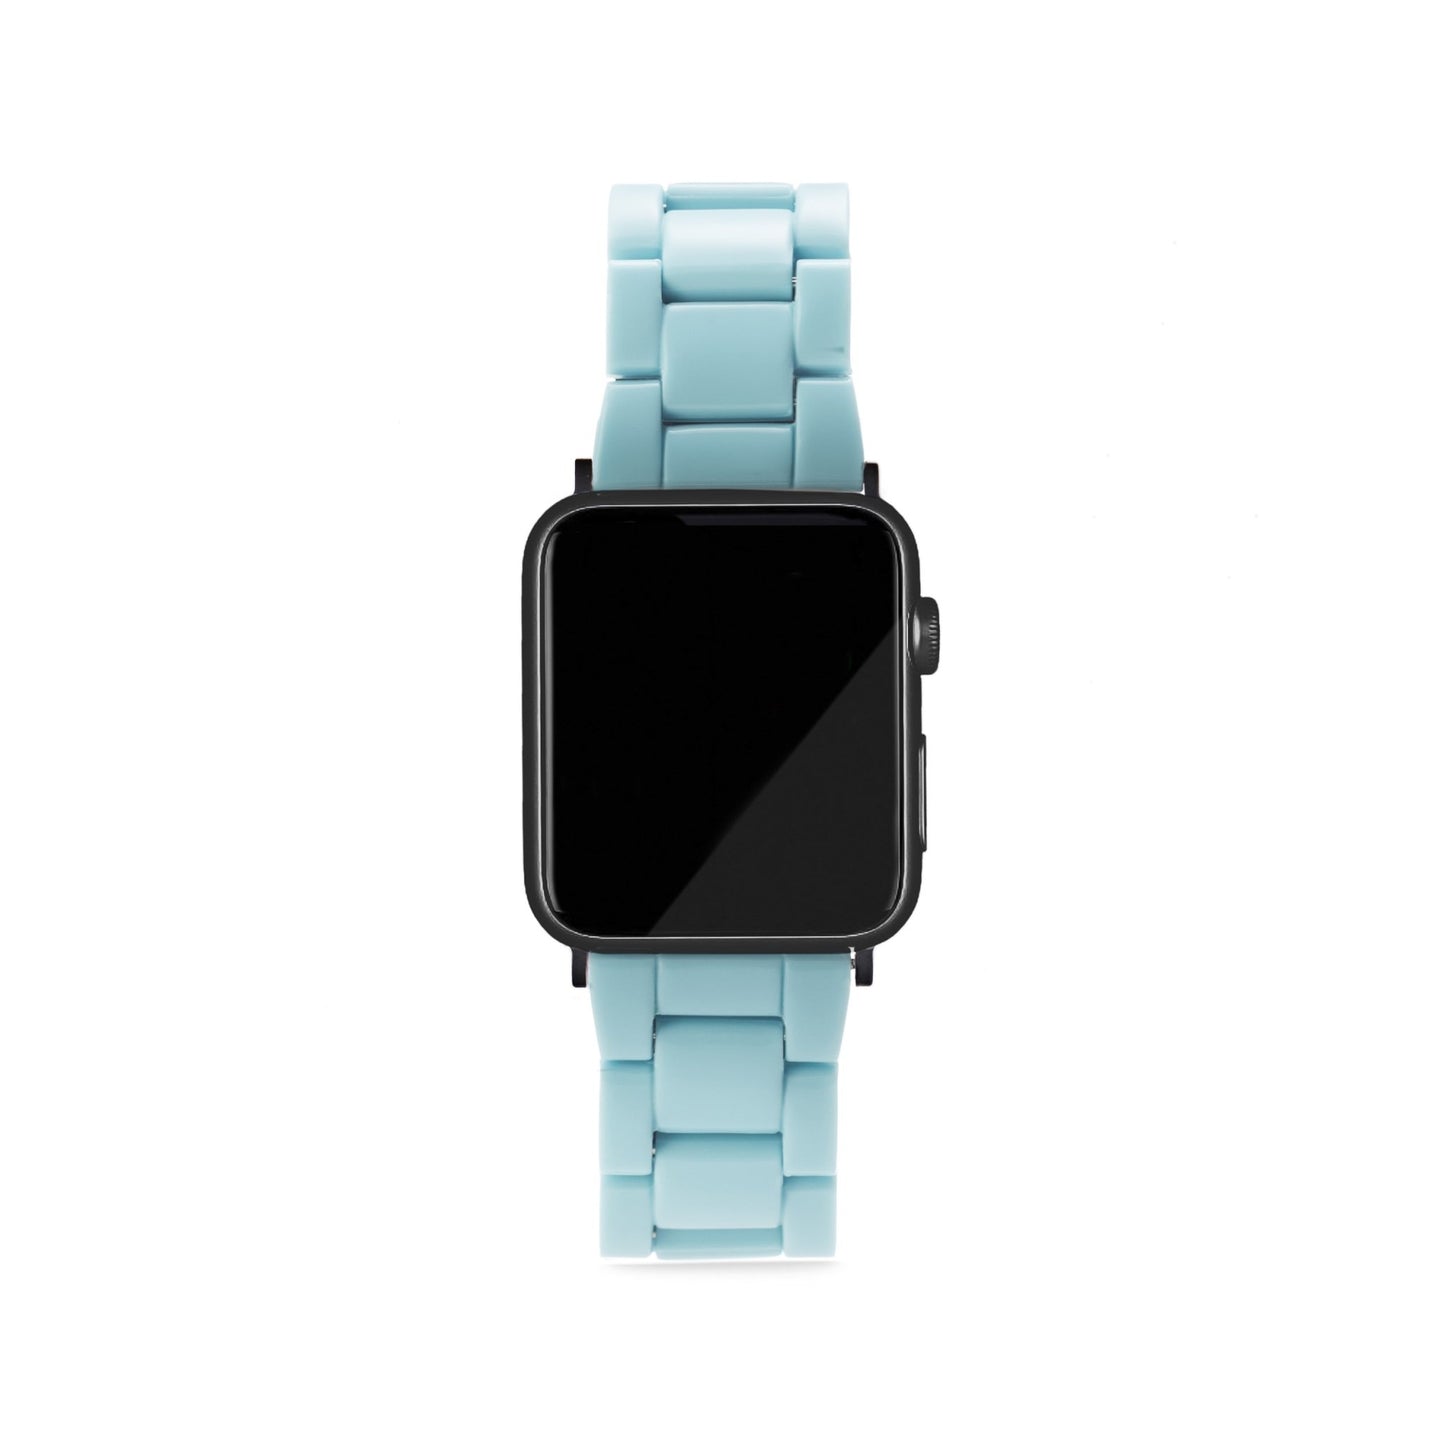 MACHETE Apple Watch Band in Light Blue